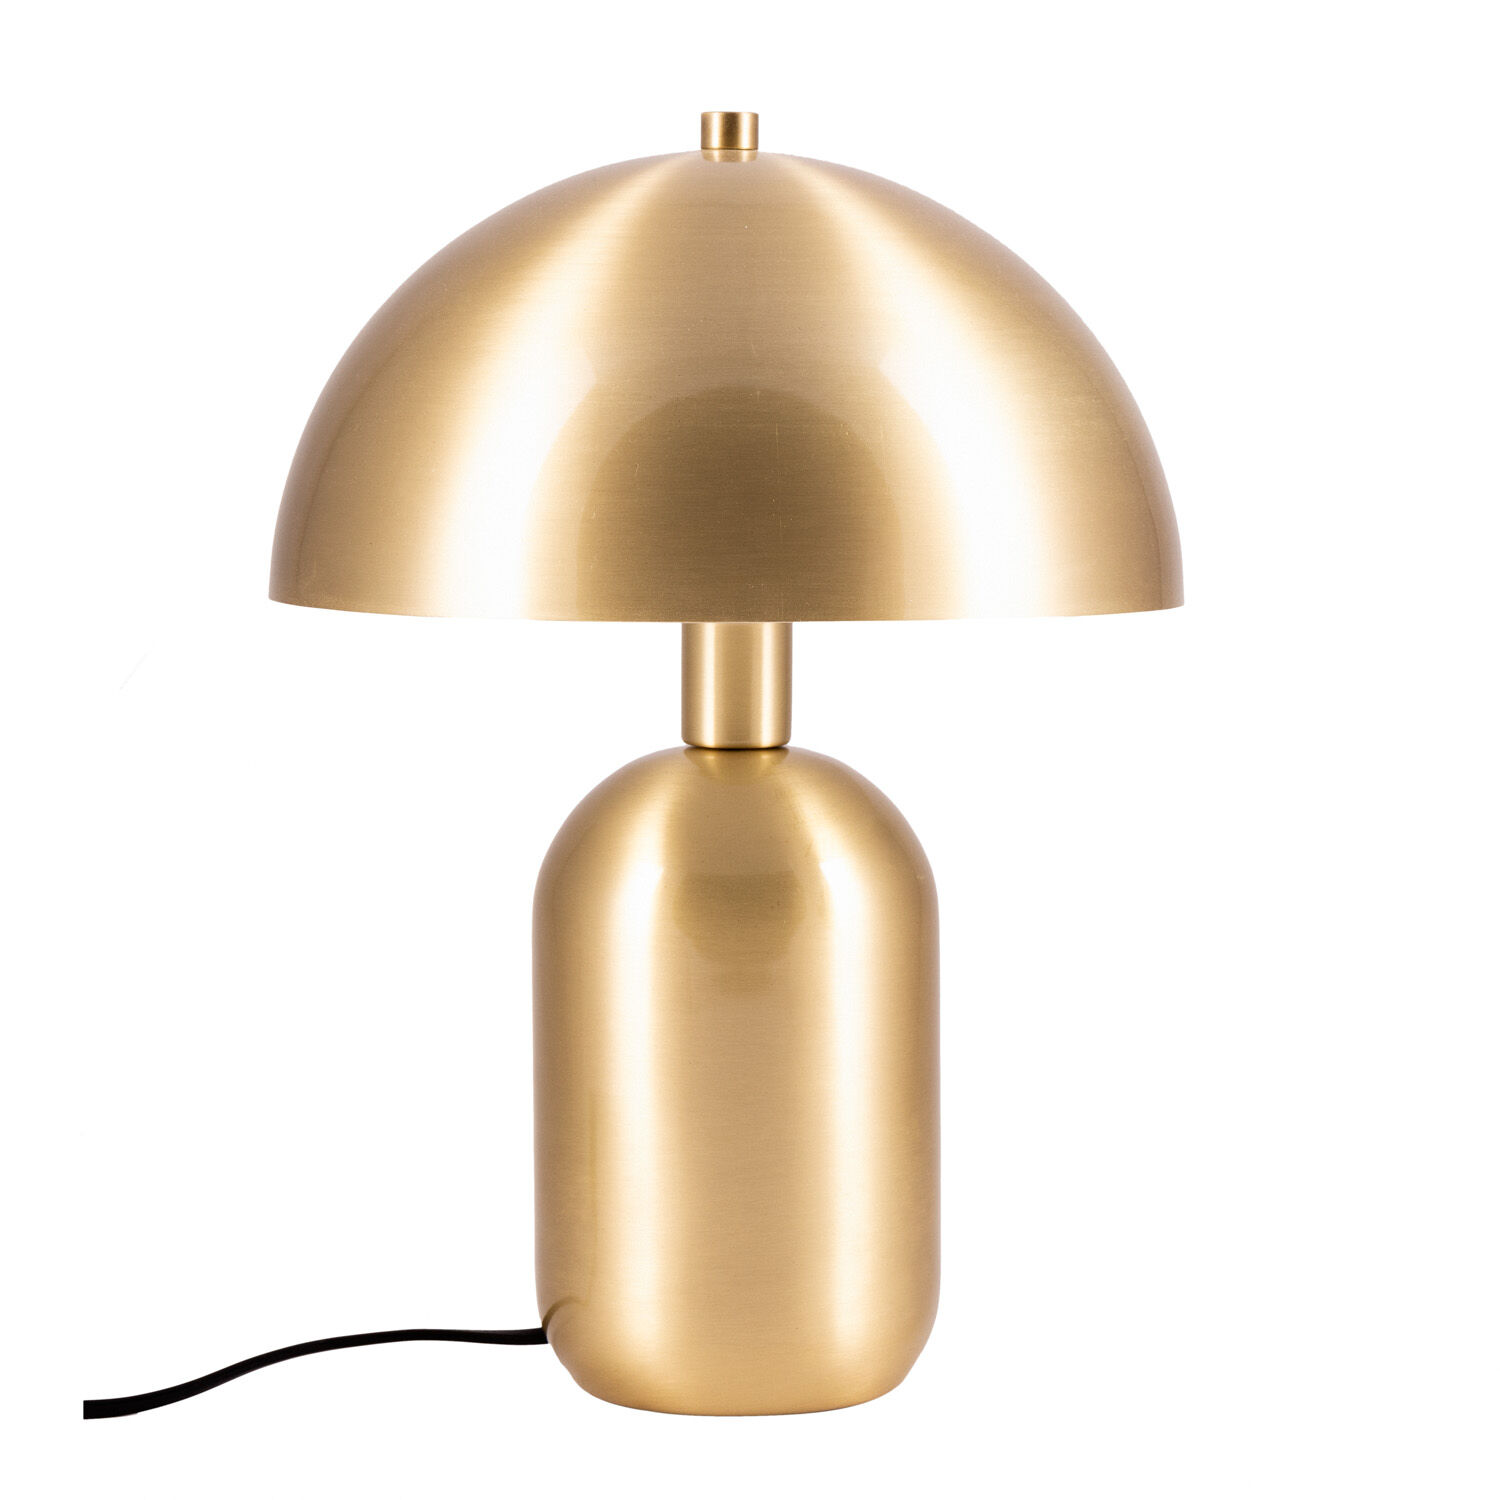 Standard produsent Lampe Lisboa børstet gull